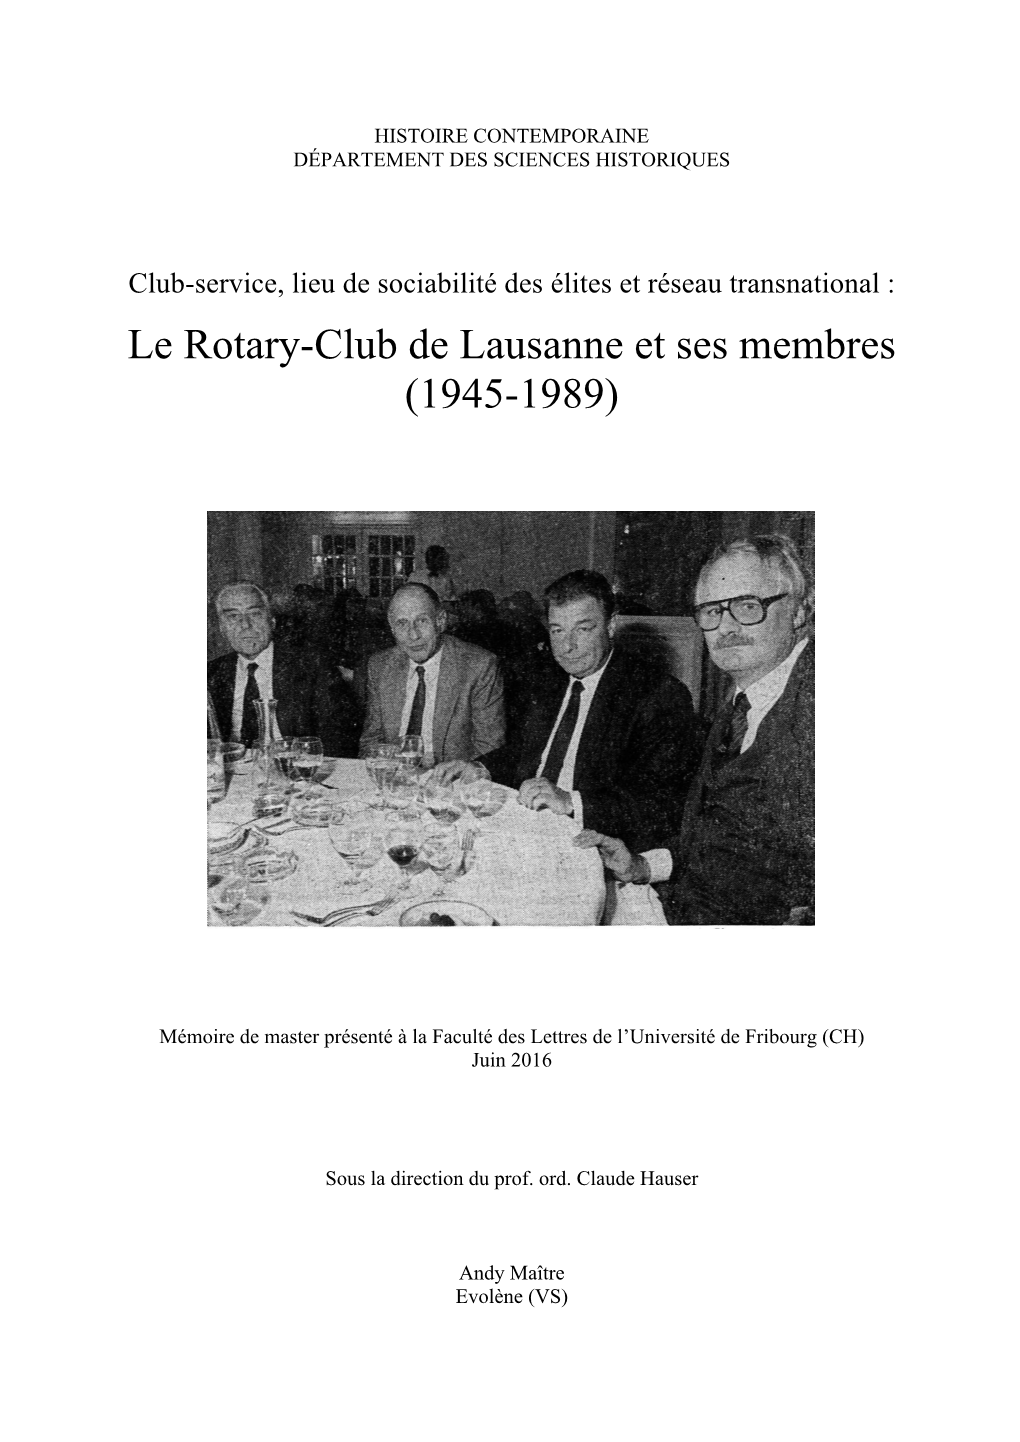 Le Rotary-Club De Lausanne Et Ses Membres (1945-1989)